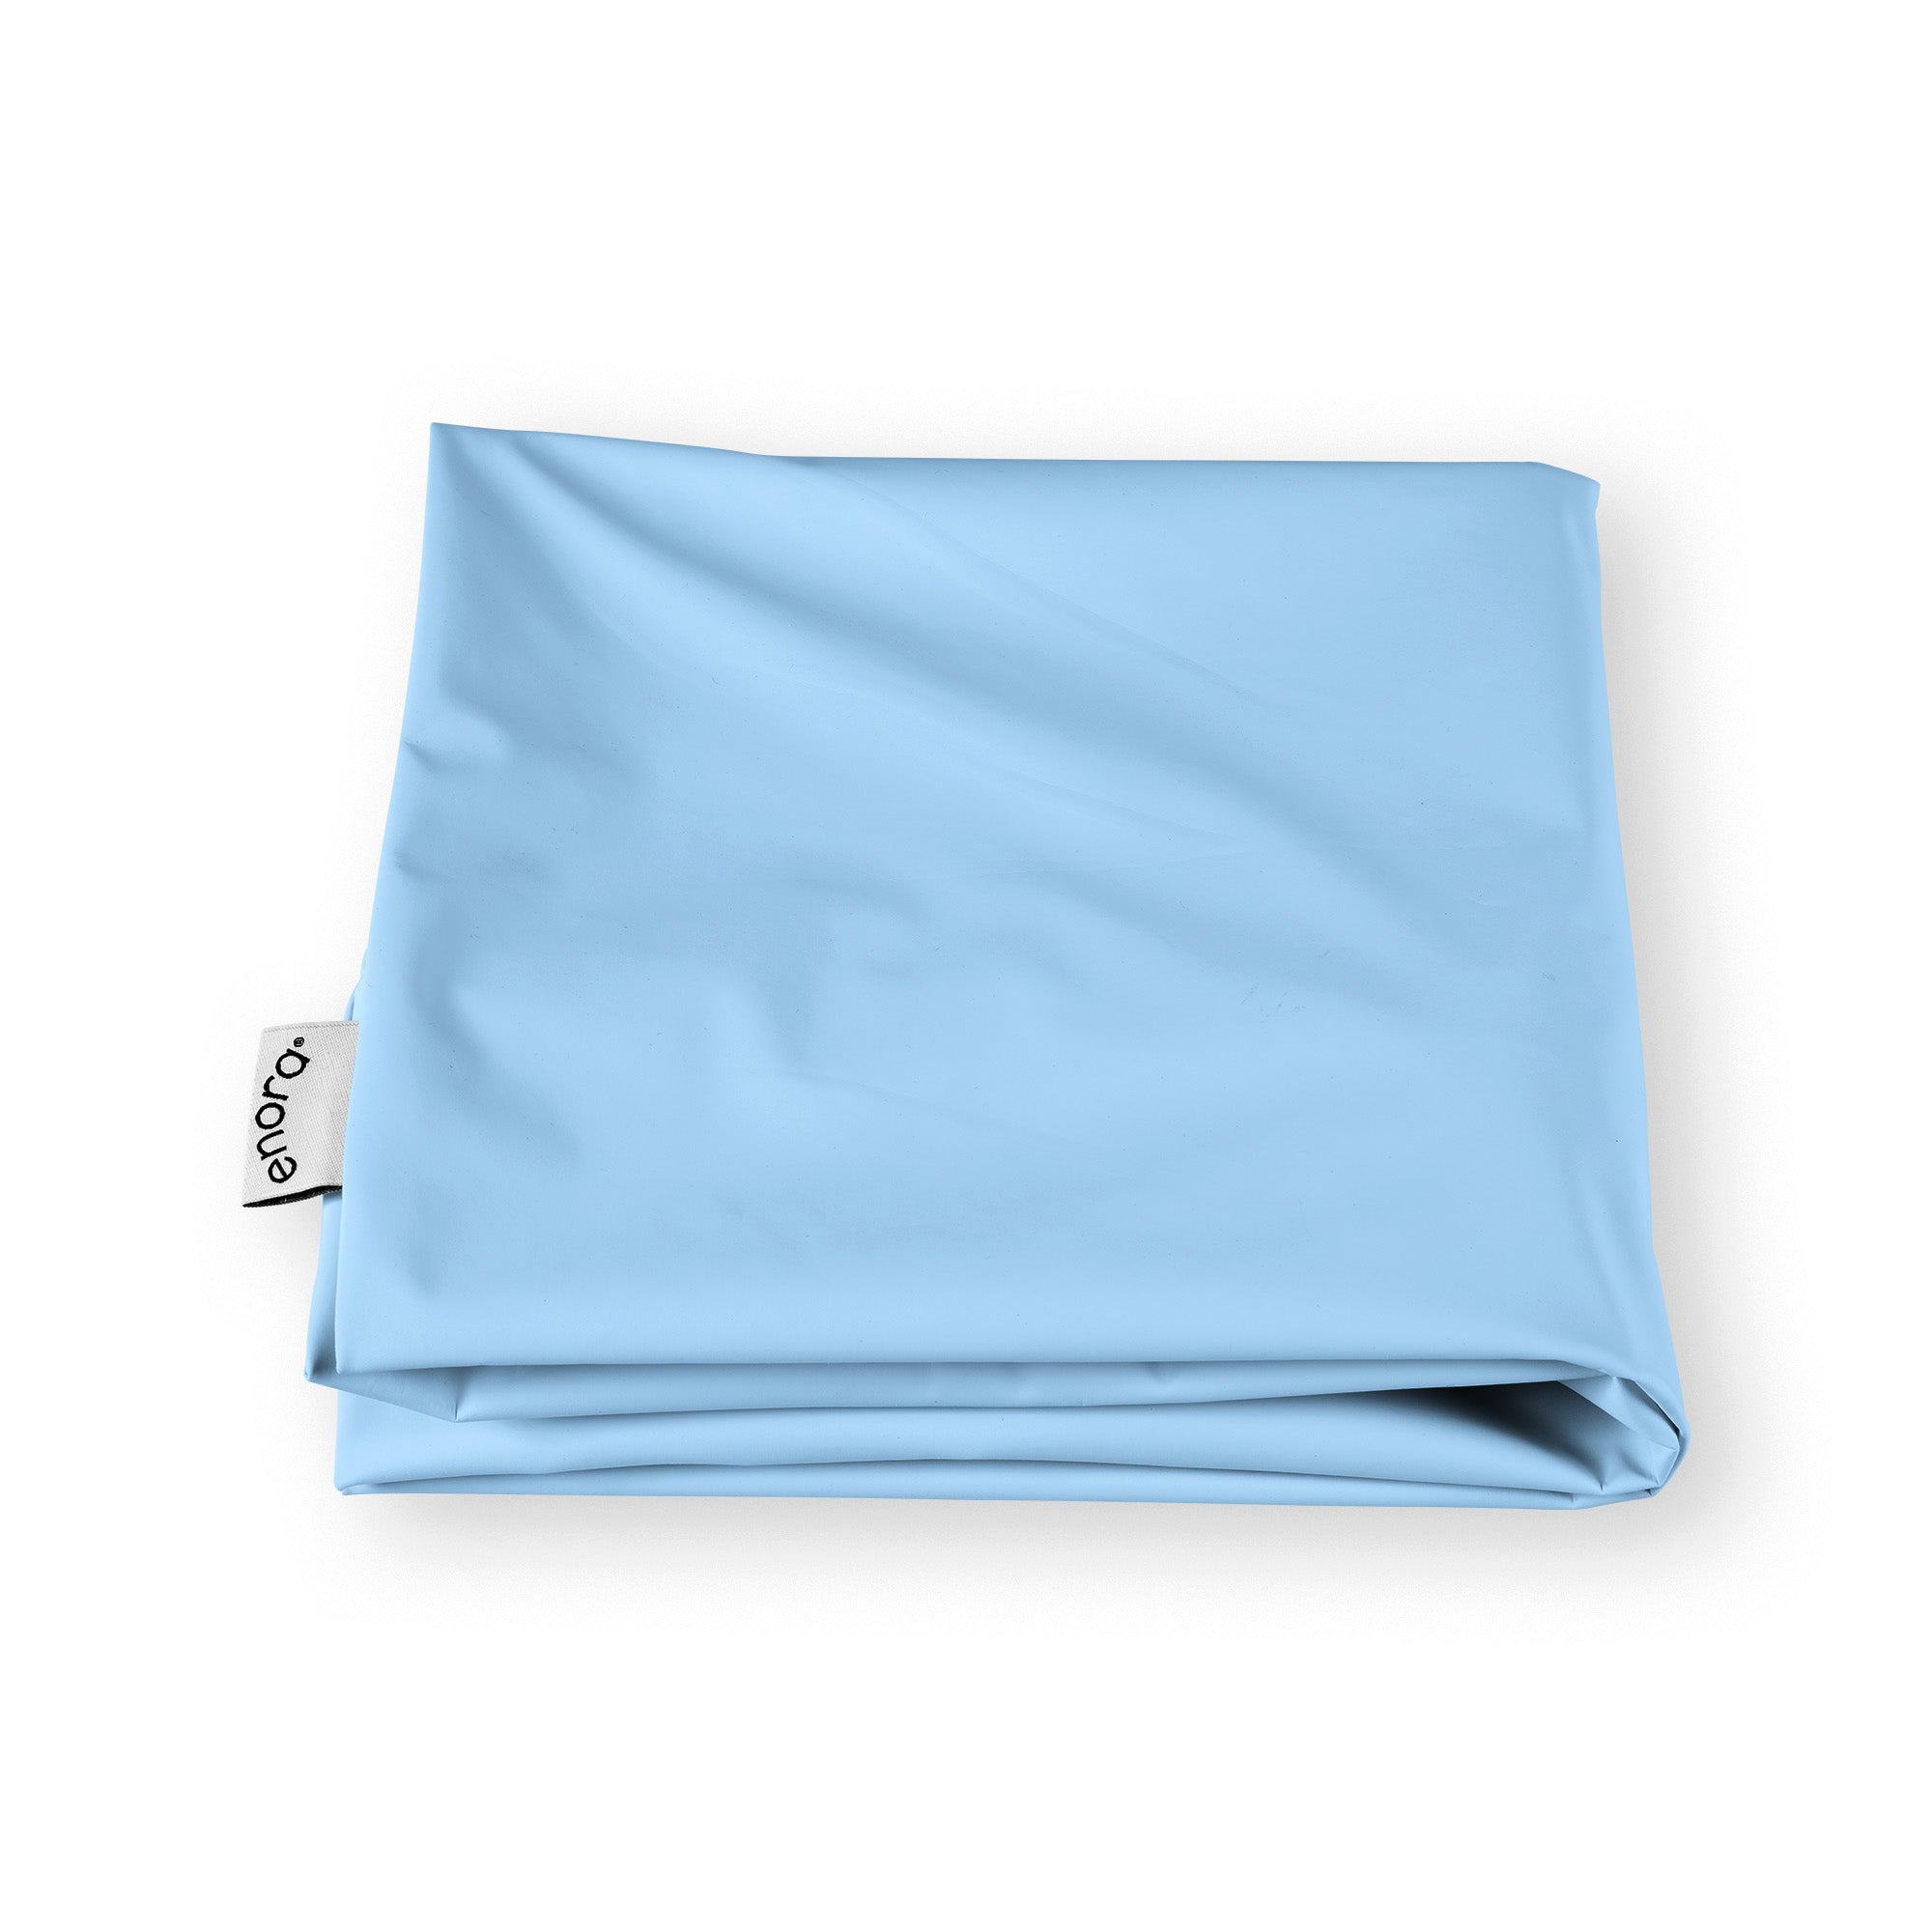 Enora® Air Cushion Extra Cover